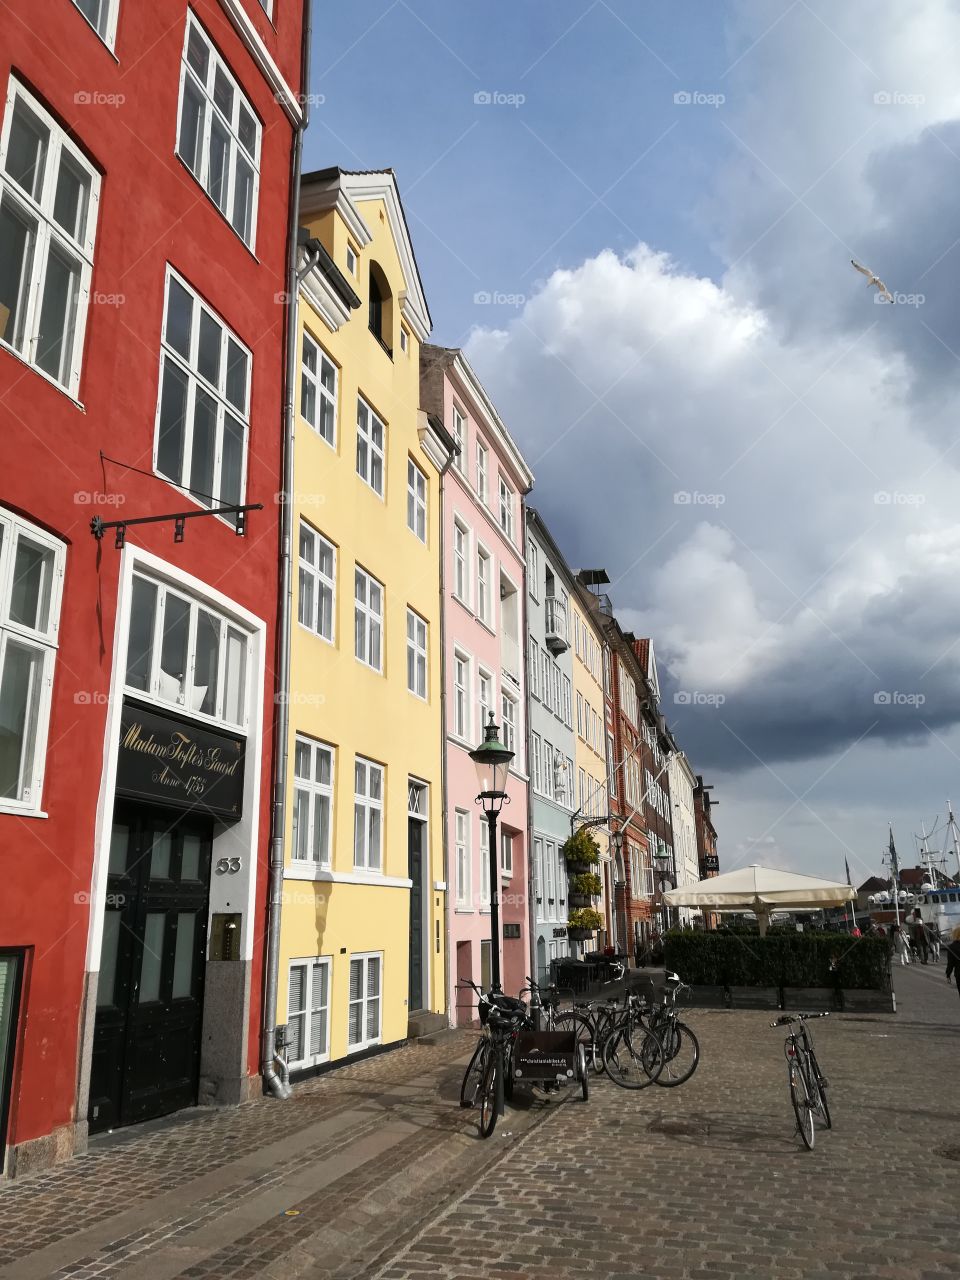 Kopenhagen buildings